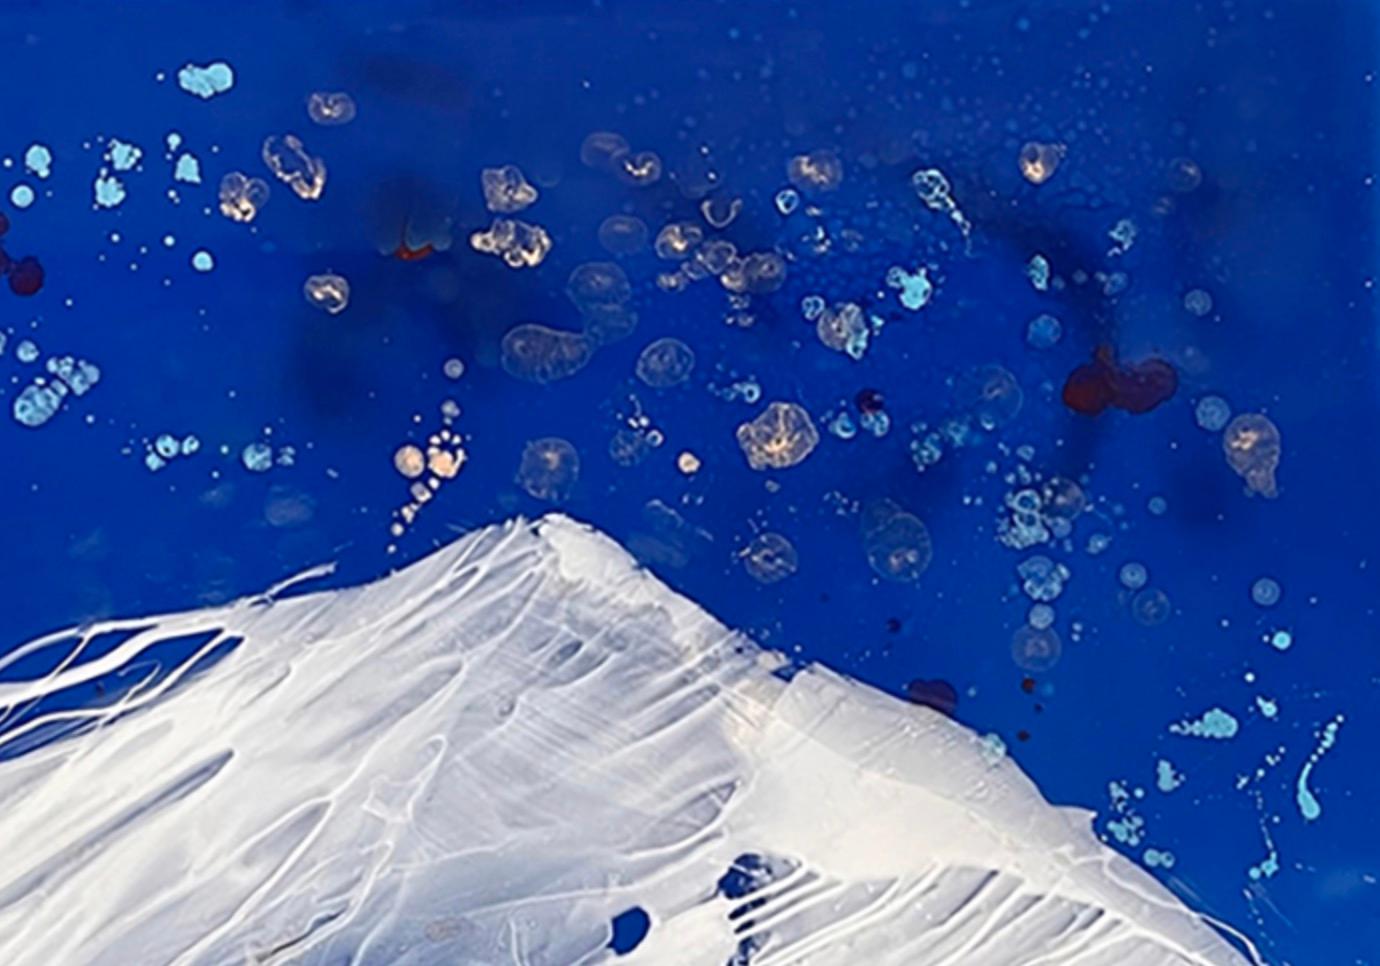 Montagne de l'esprit - Bleu Abstract Painting par Sharon Weiner